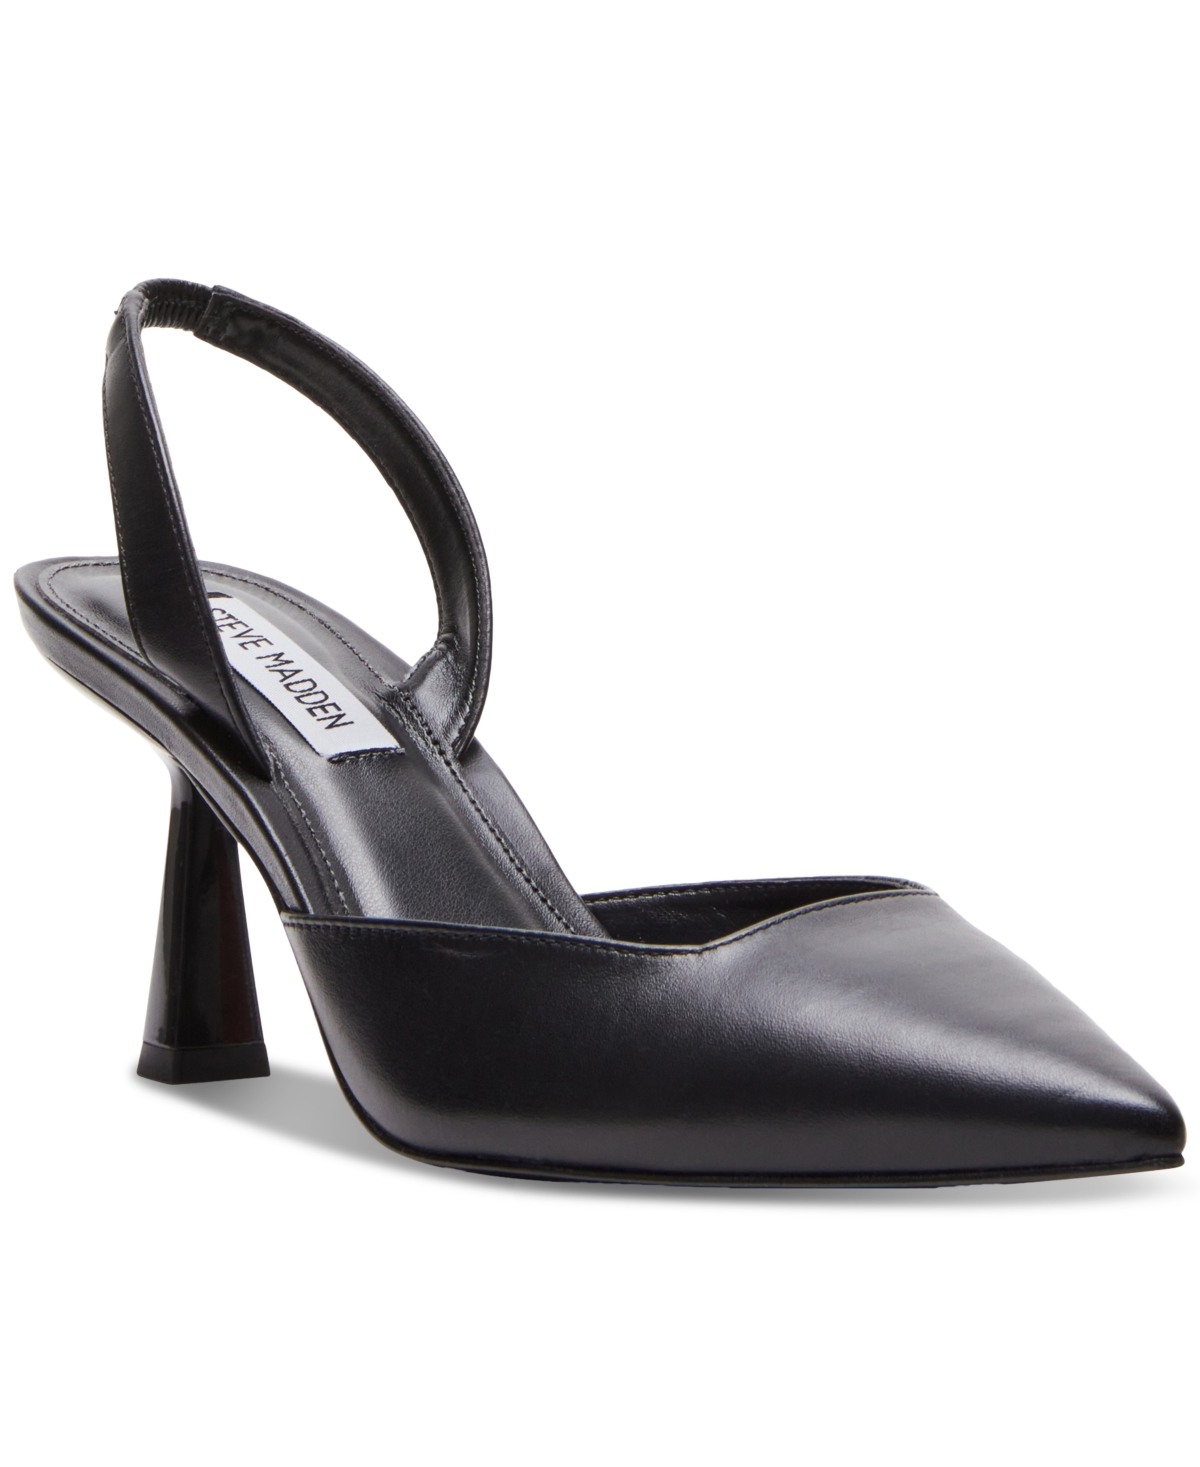 Steve Madden Women's Finlee Pointed-toe Kitten-heel Slingback Pumps In Black Leather